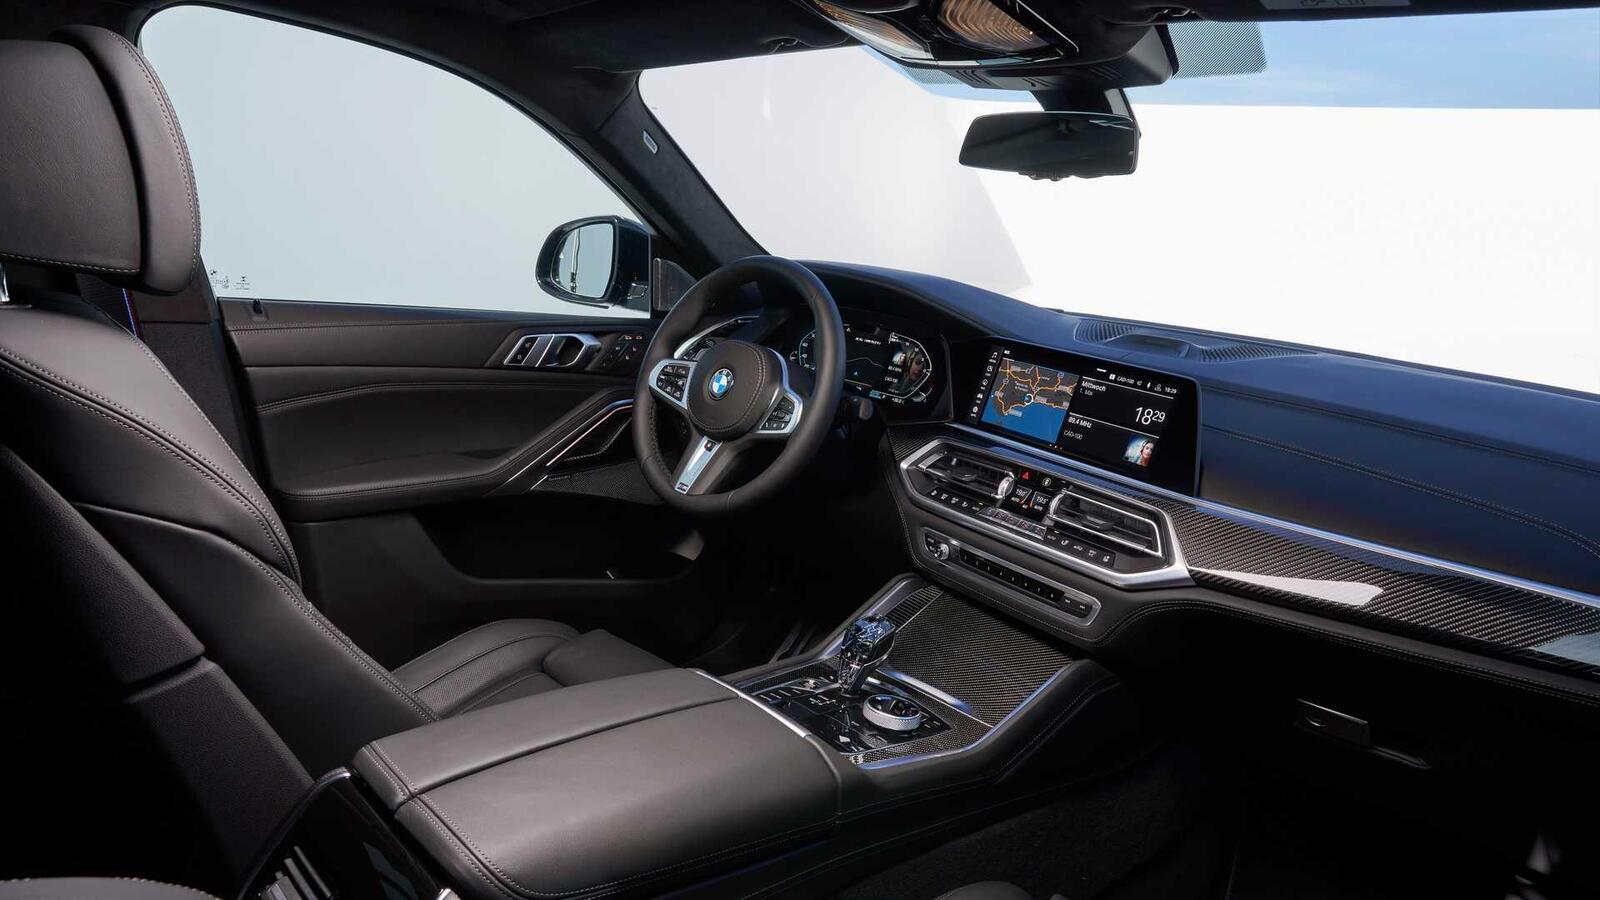 Thế hệ mới BMW X6 2020 chính thức ra mắt - Hình 16